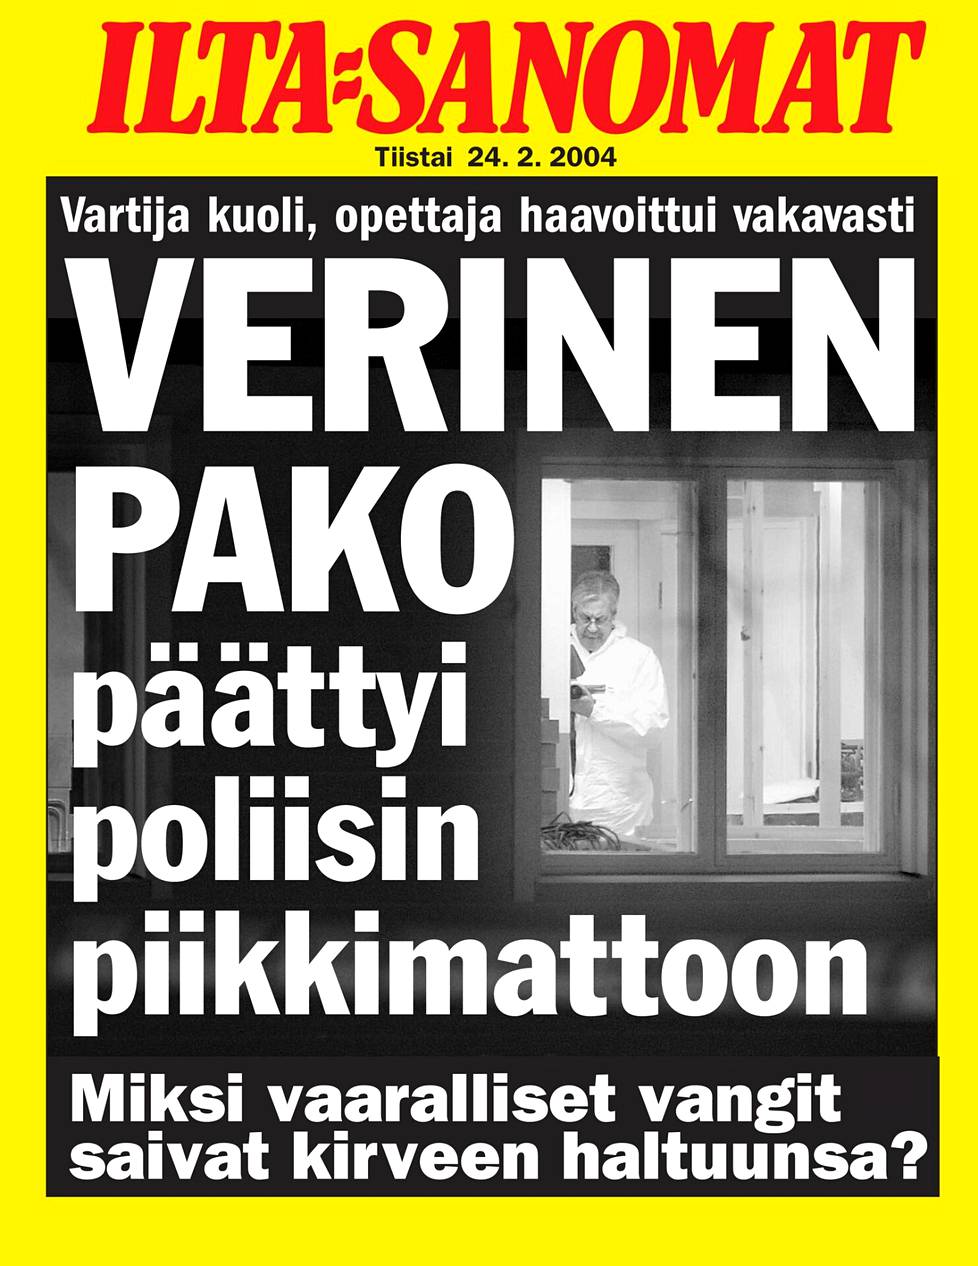 Näin Ilta-Sanomat kertoi murhatyöstä tuoreeltaan vuonna 2004.